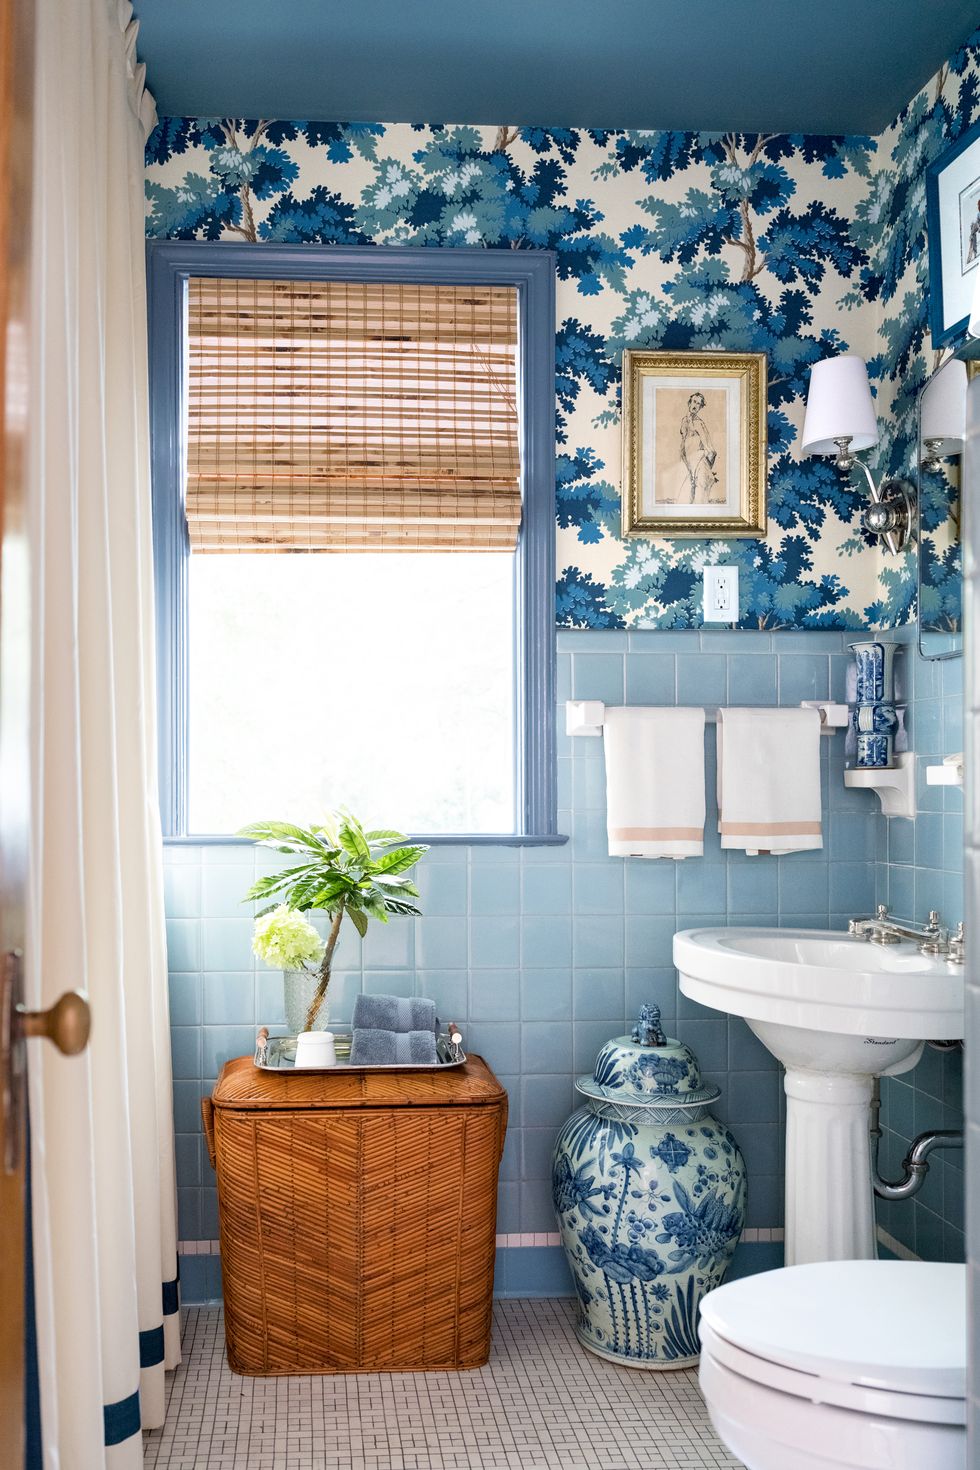 hình ảnh phòng tắm phong cách Retro với gạch ốp tường màu xanh da trời, giấy dán tường họa tiết lá cây cối màu xanh, bình gốm trang trí